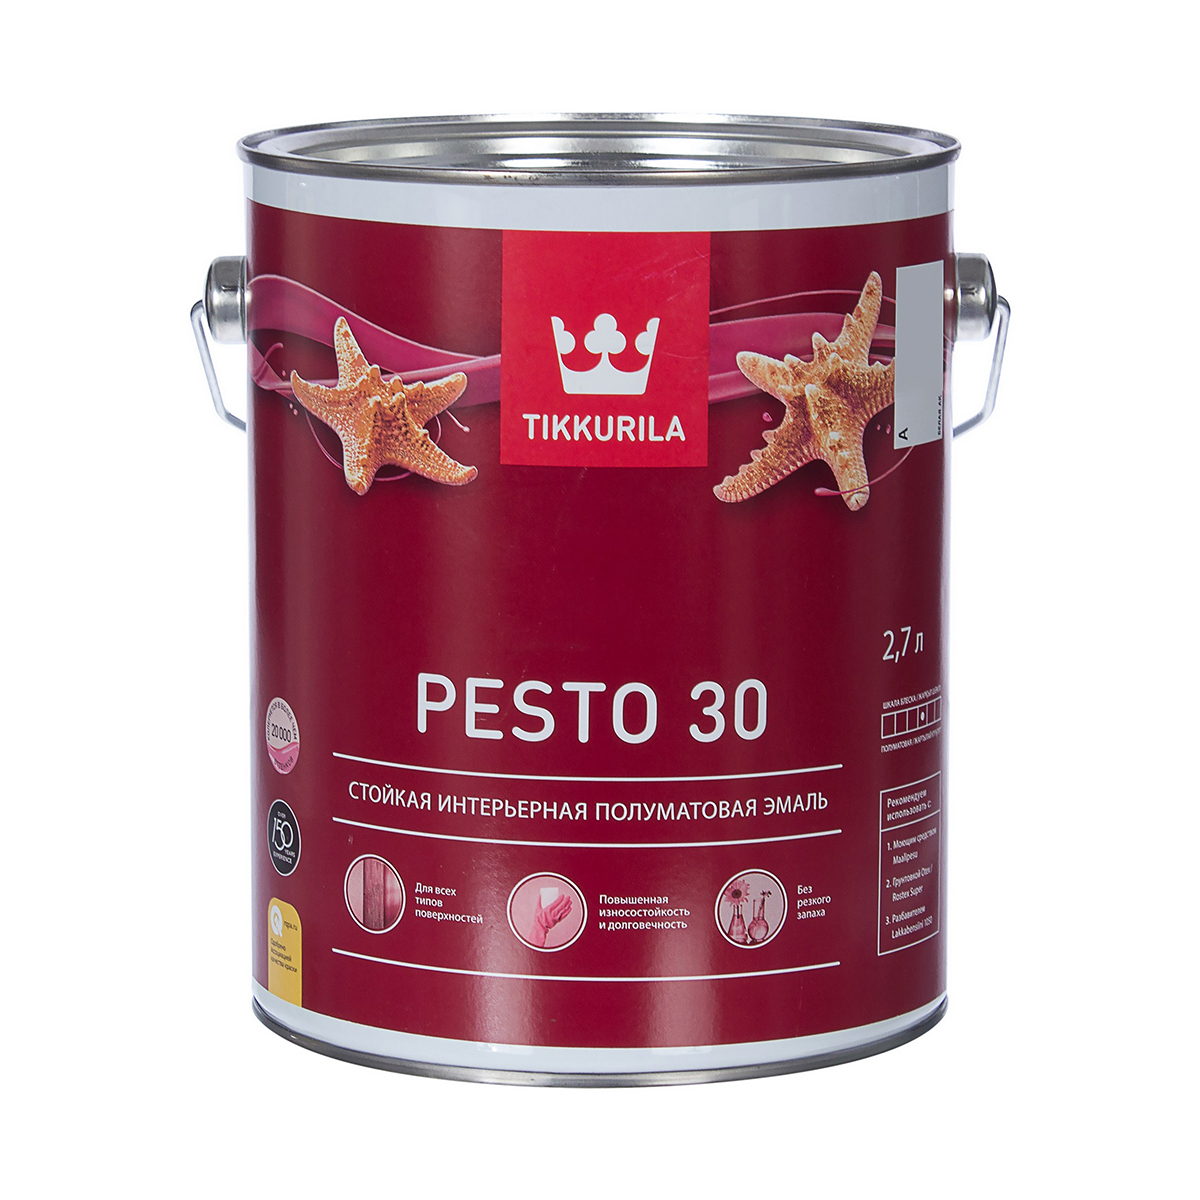 Эмаль алкидная стойкая полуматовая Pesto 30 (Песто 30) TIKKURILA 2,7 л бесцветная (база С)